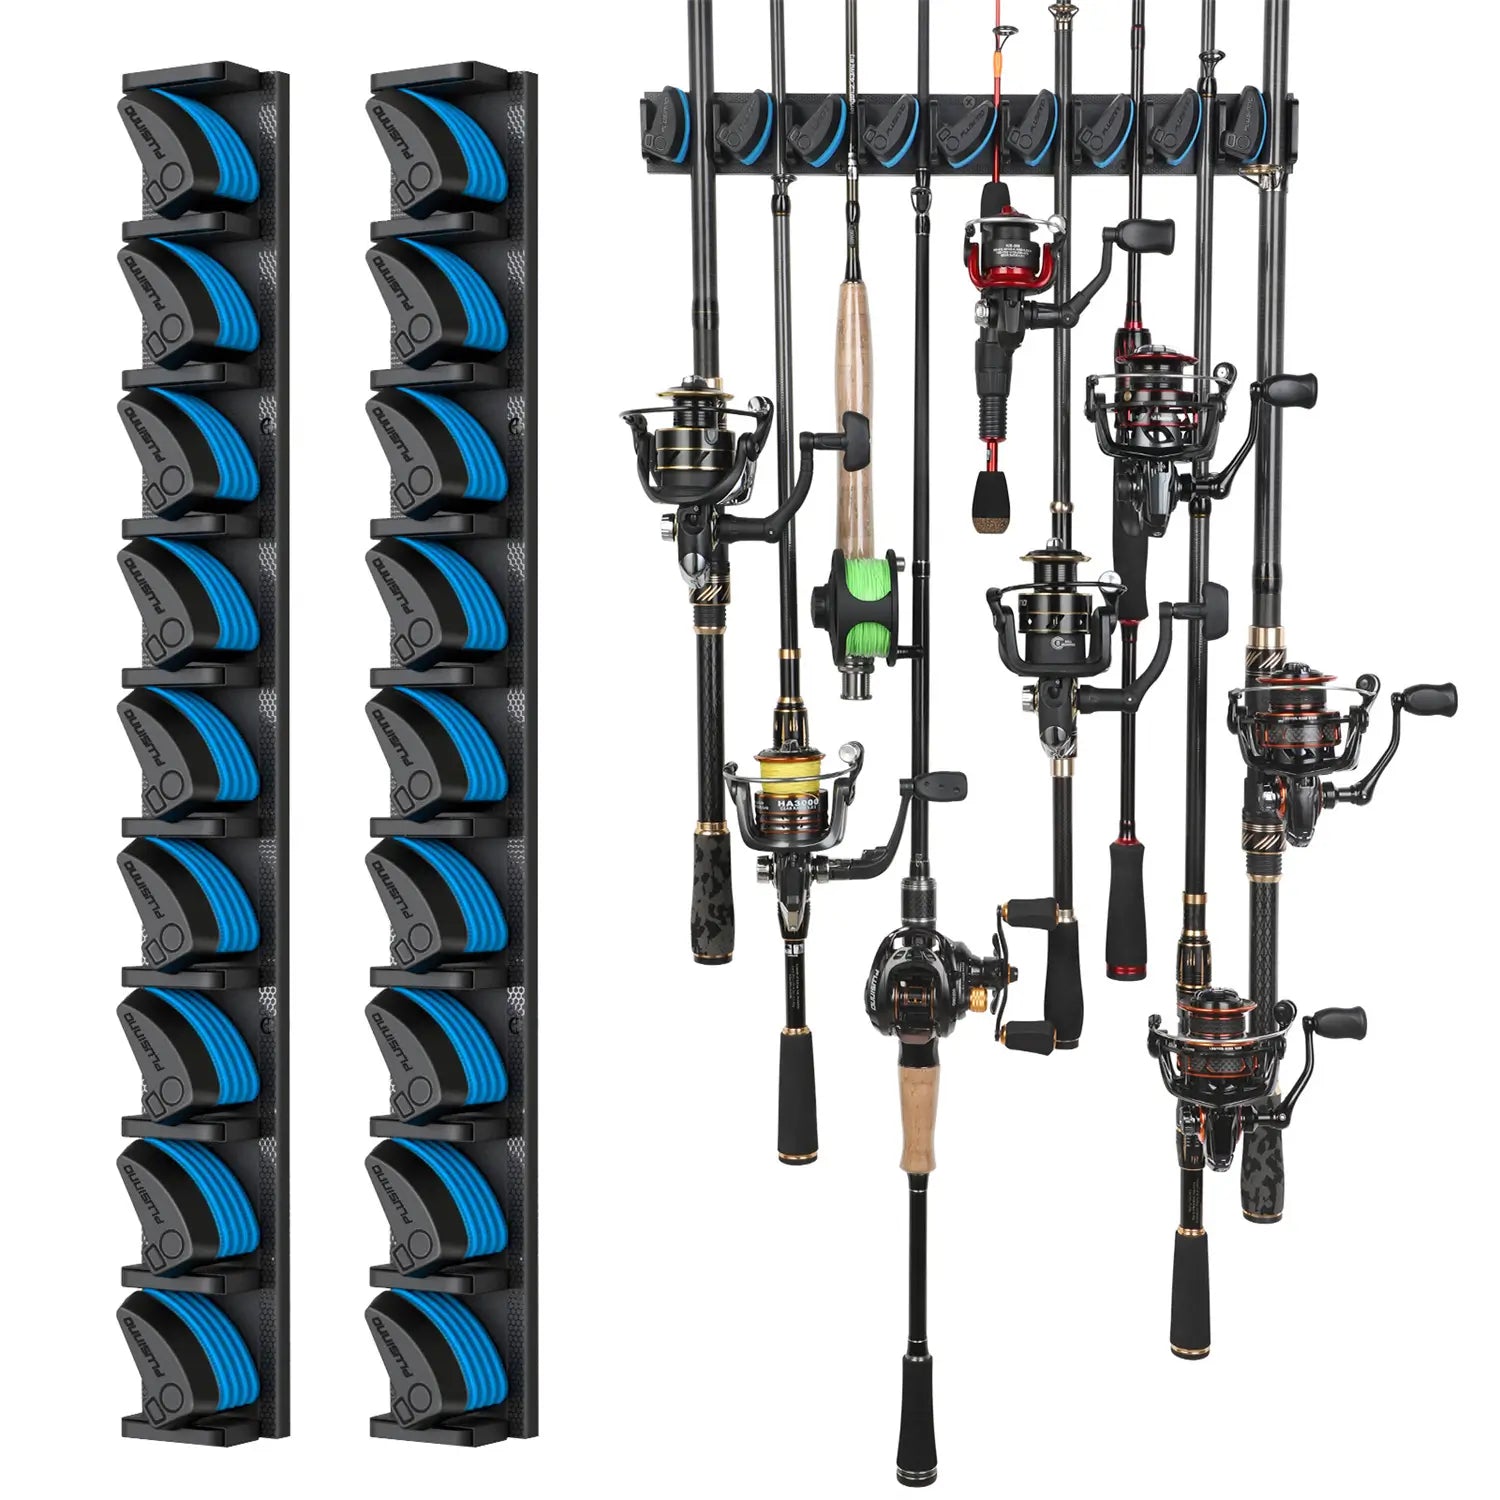 Magnetic Fishing Rod Holder, Fishing Rod Holders Rack